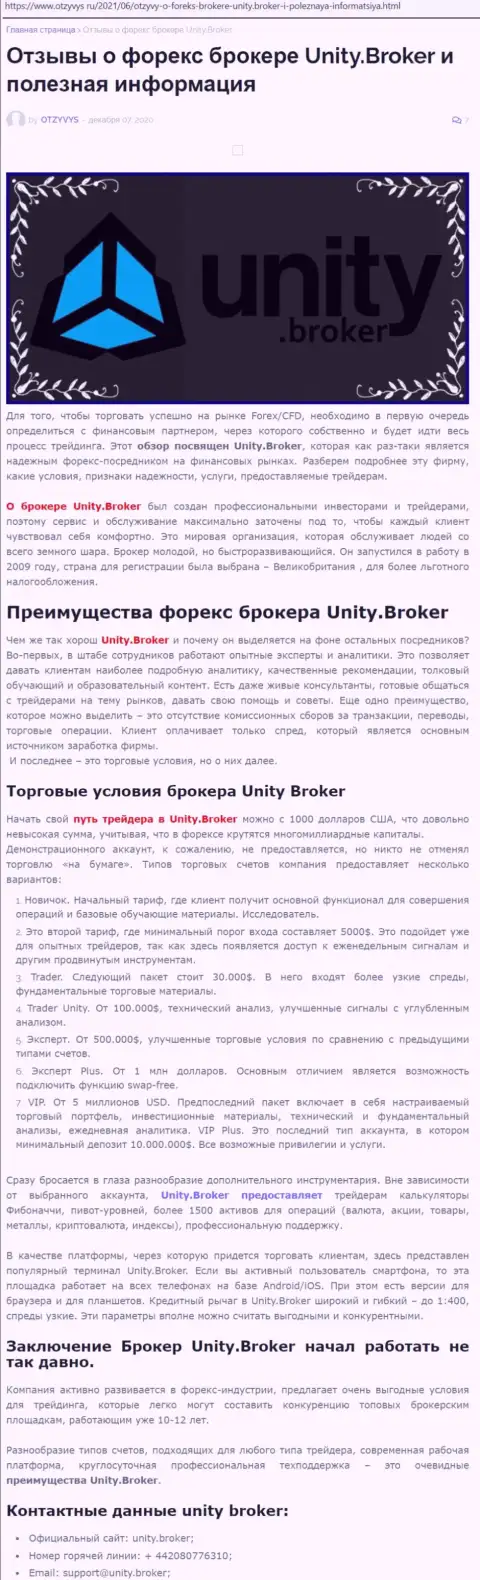 Публикация о forex-дилинговой организации Unity Broker на сайте otzyvys ru